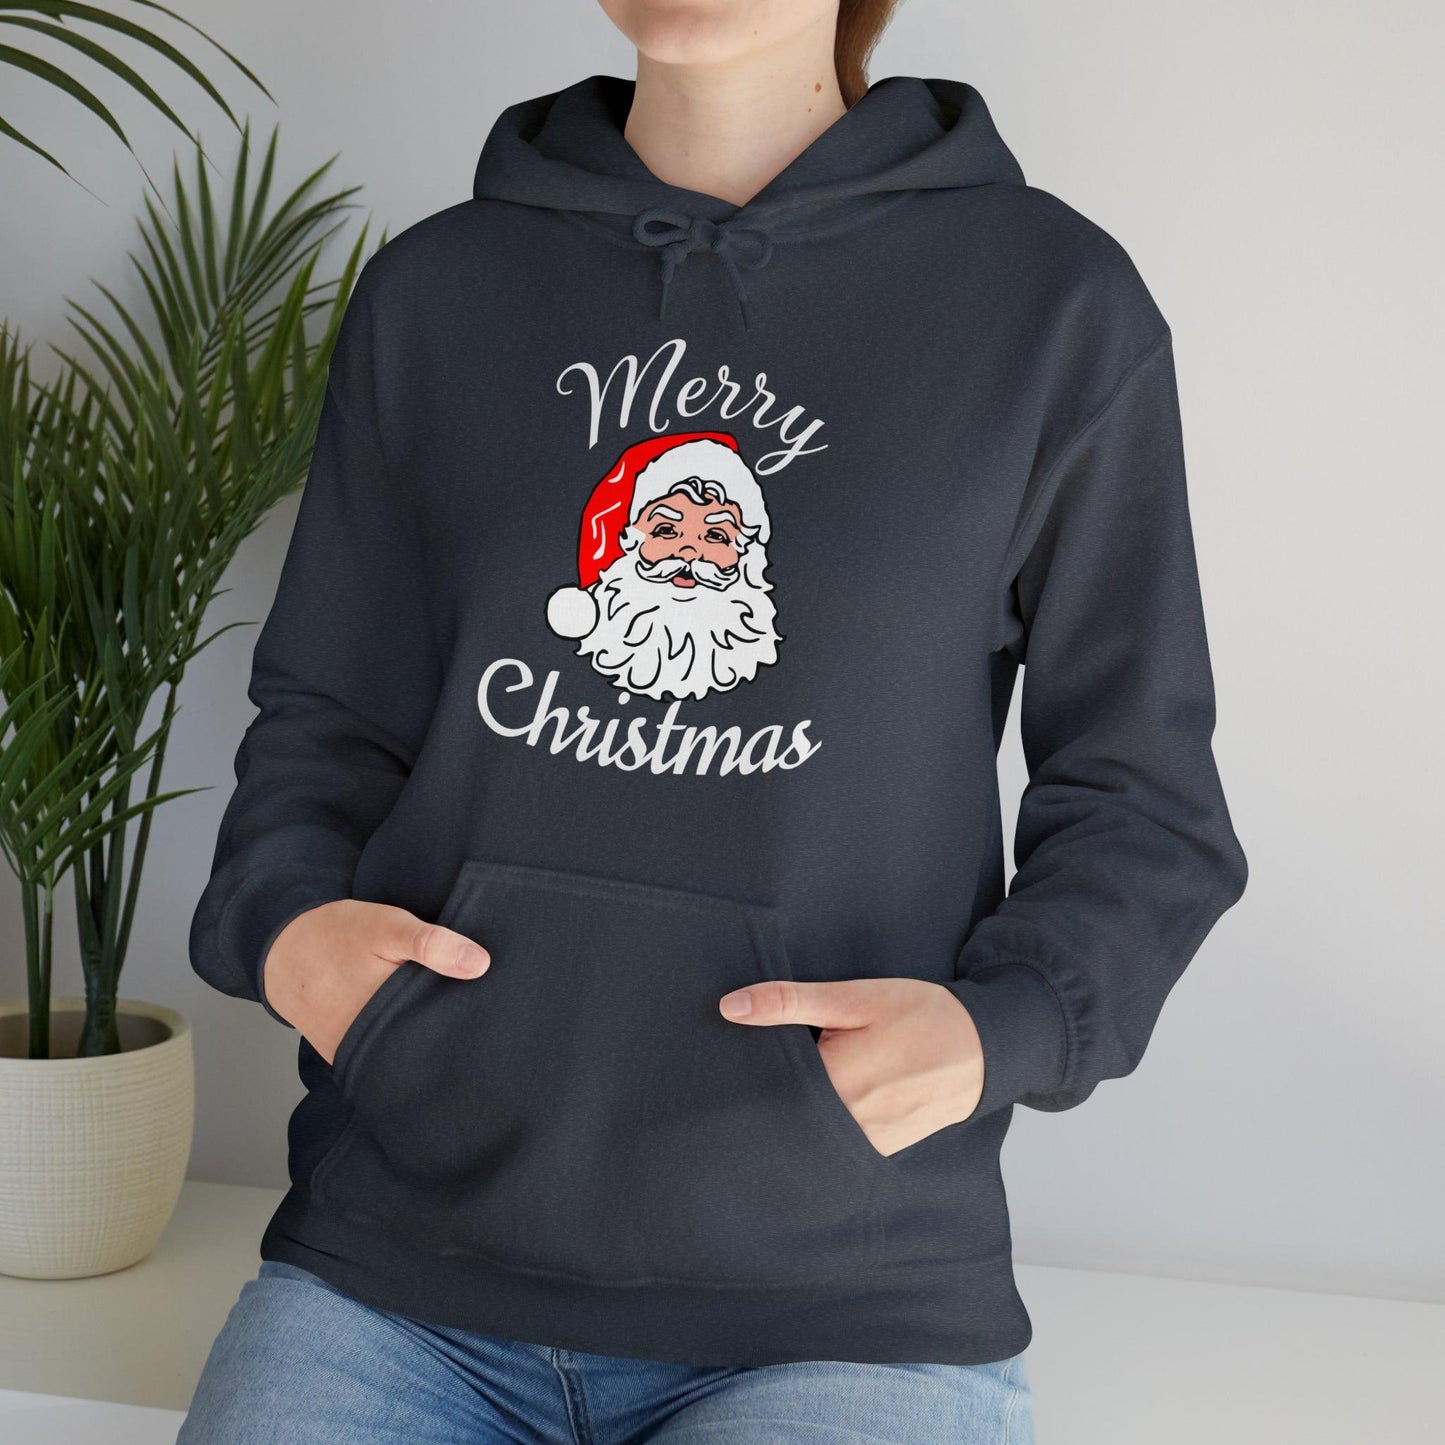 Santa Hoodie, Merry Christmas Hooded Sweatshirt, Christmas Shirt, Christmas Gift - Giftsmojo